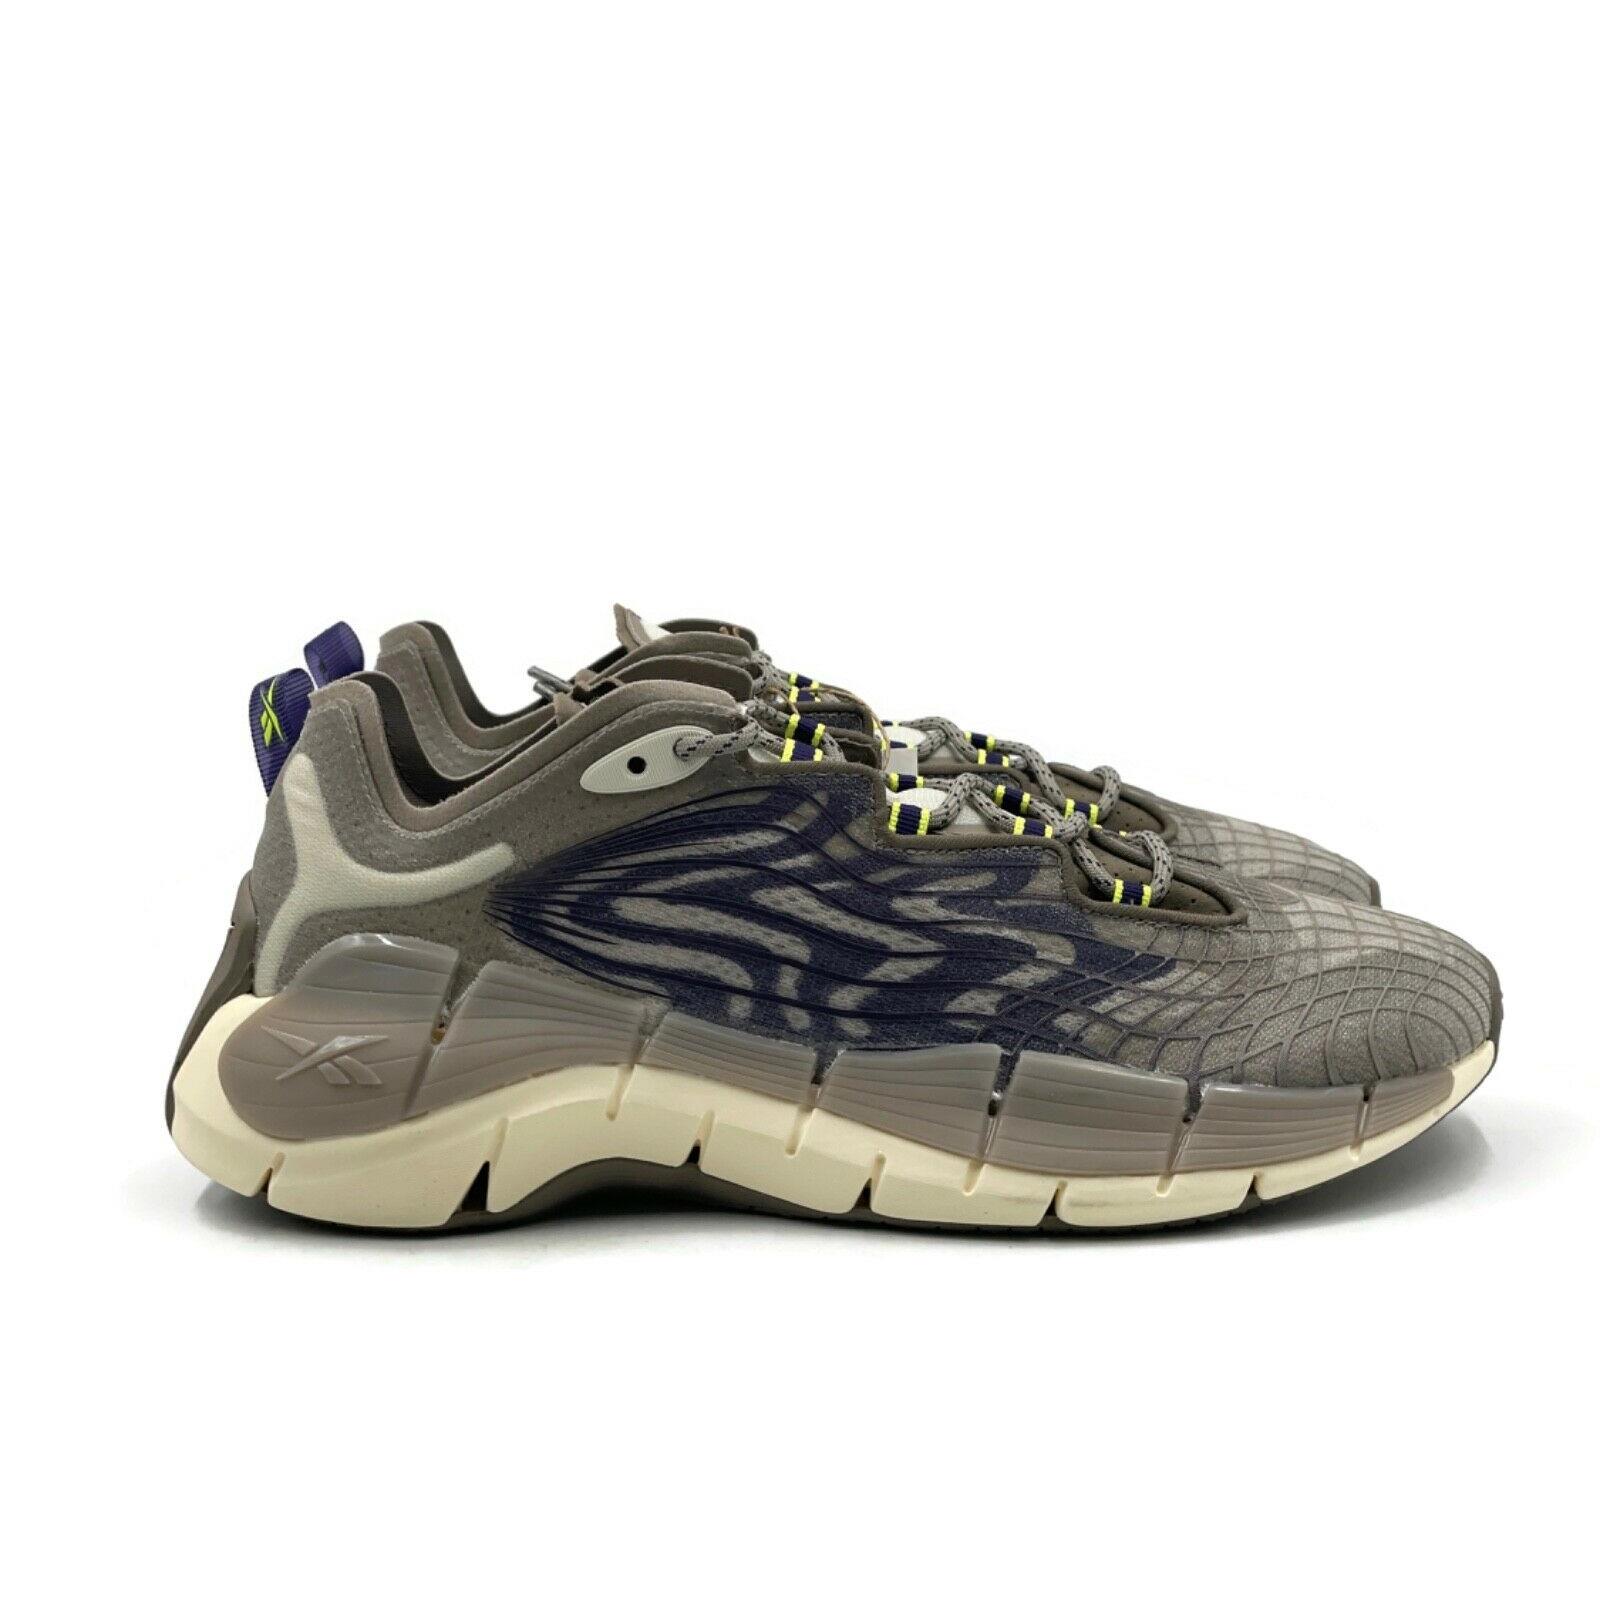 Reebok Zig Kinetica II 2 Mens Size 9 Casual Running Shoe Gray Trainer Sneaker